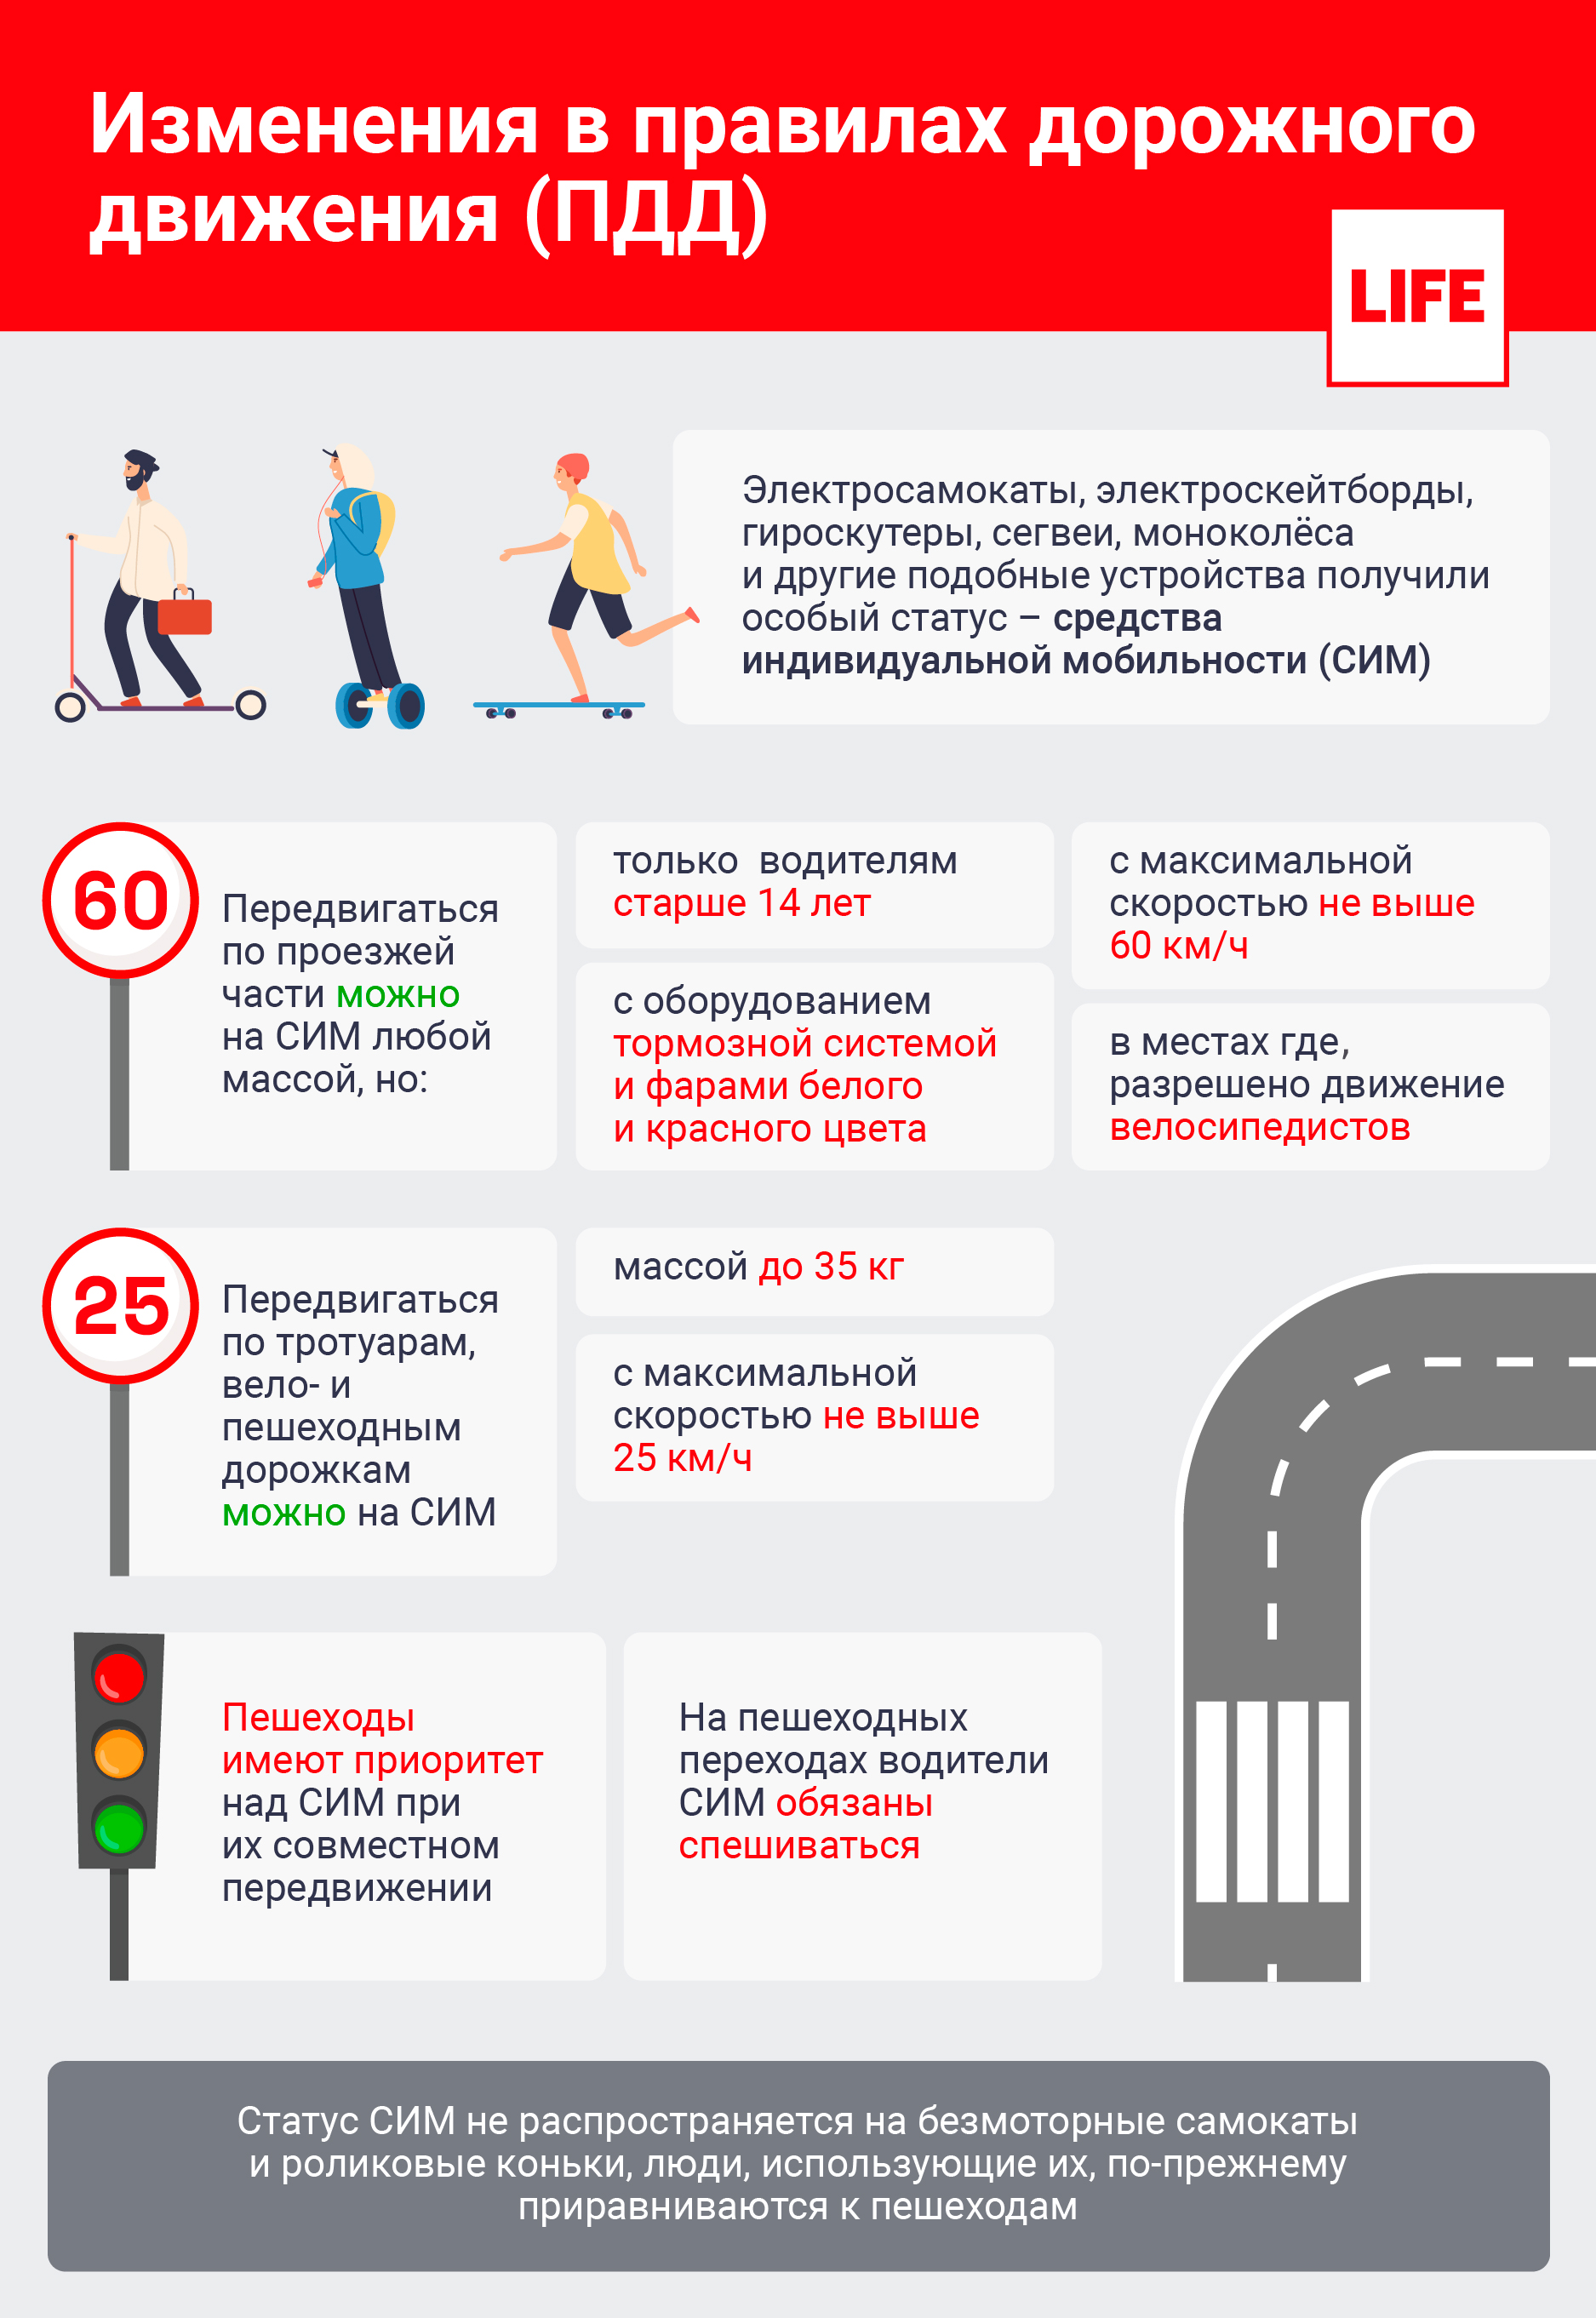 Изменения в правилах дорожного движения (ПДД). Инфографика © LIFE